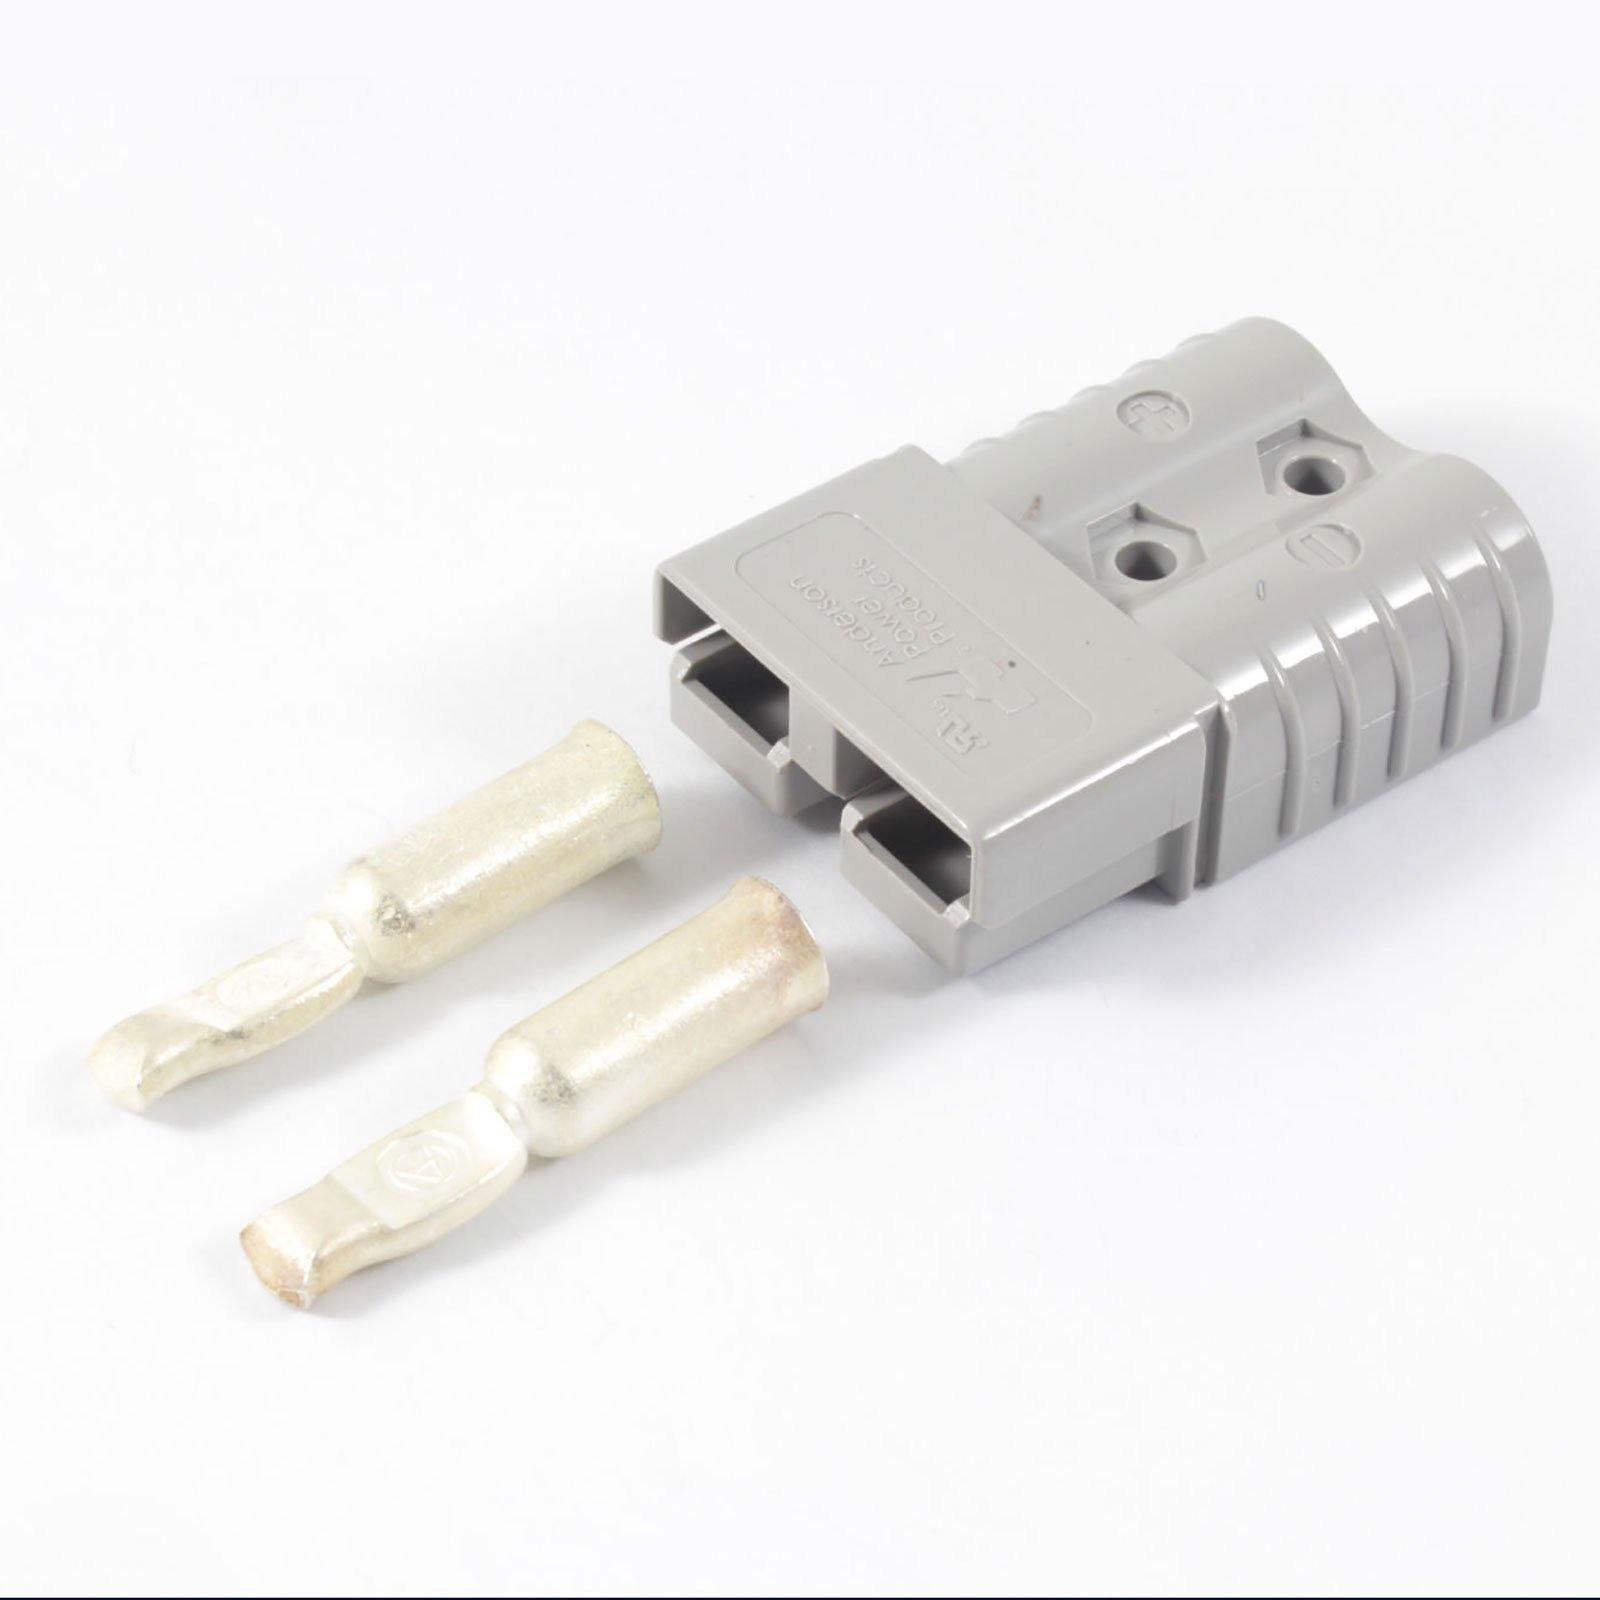 ANDERSON Power Products SB120 connecteur 120A prise pour câble.